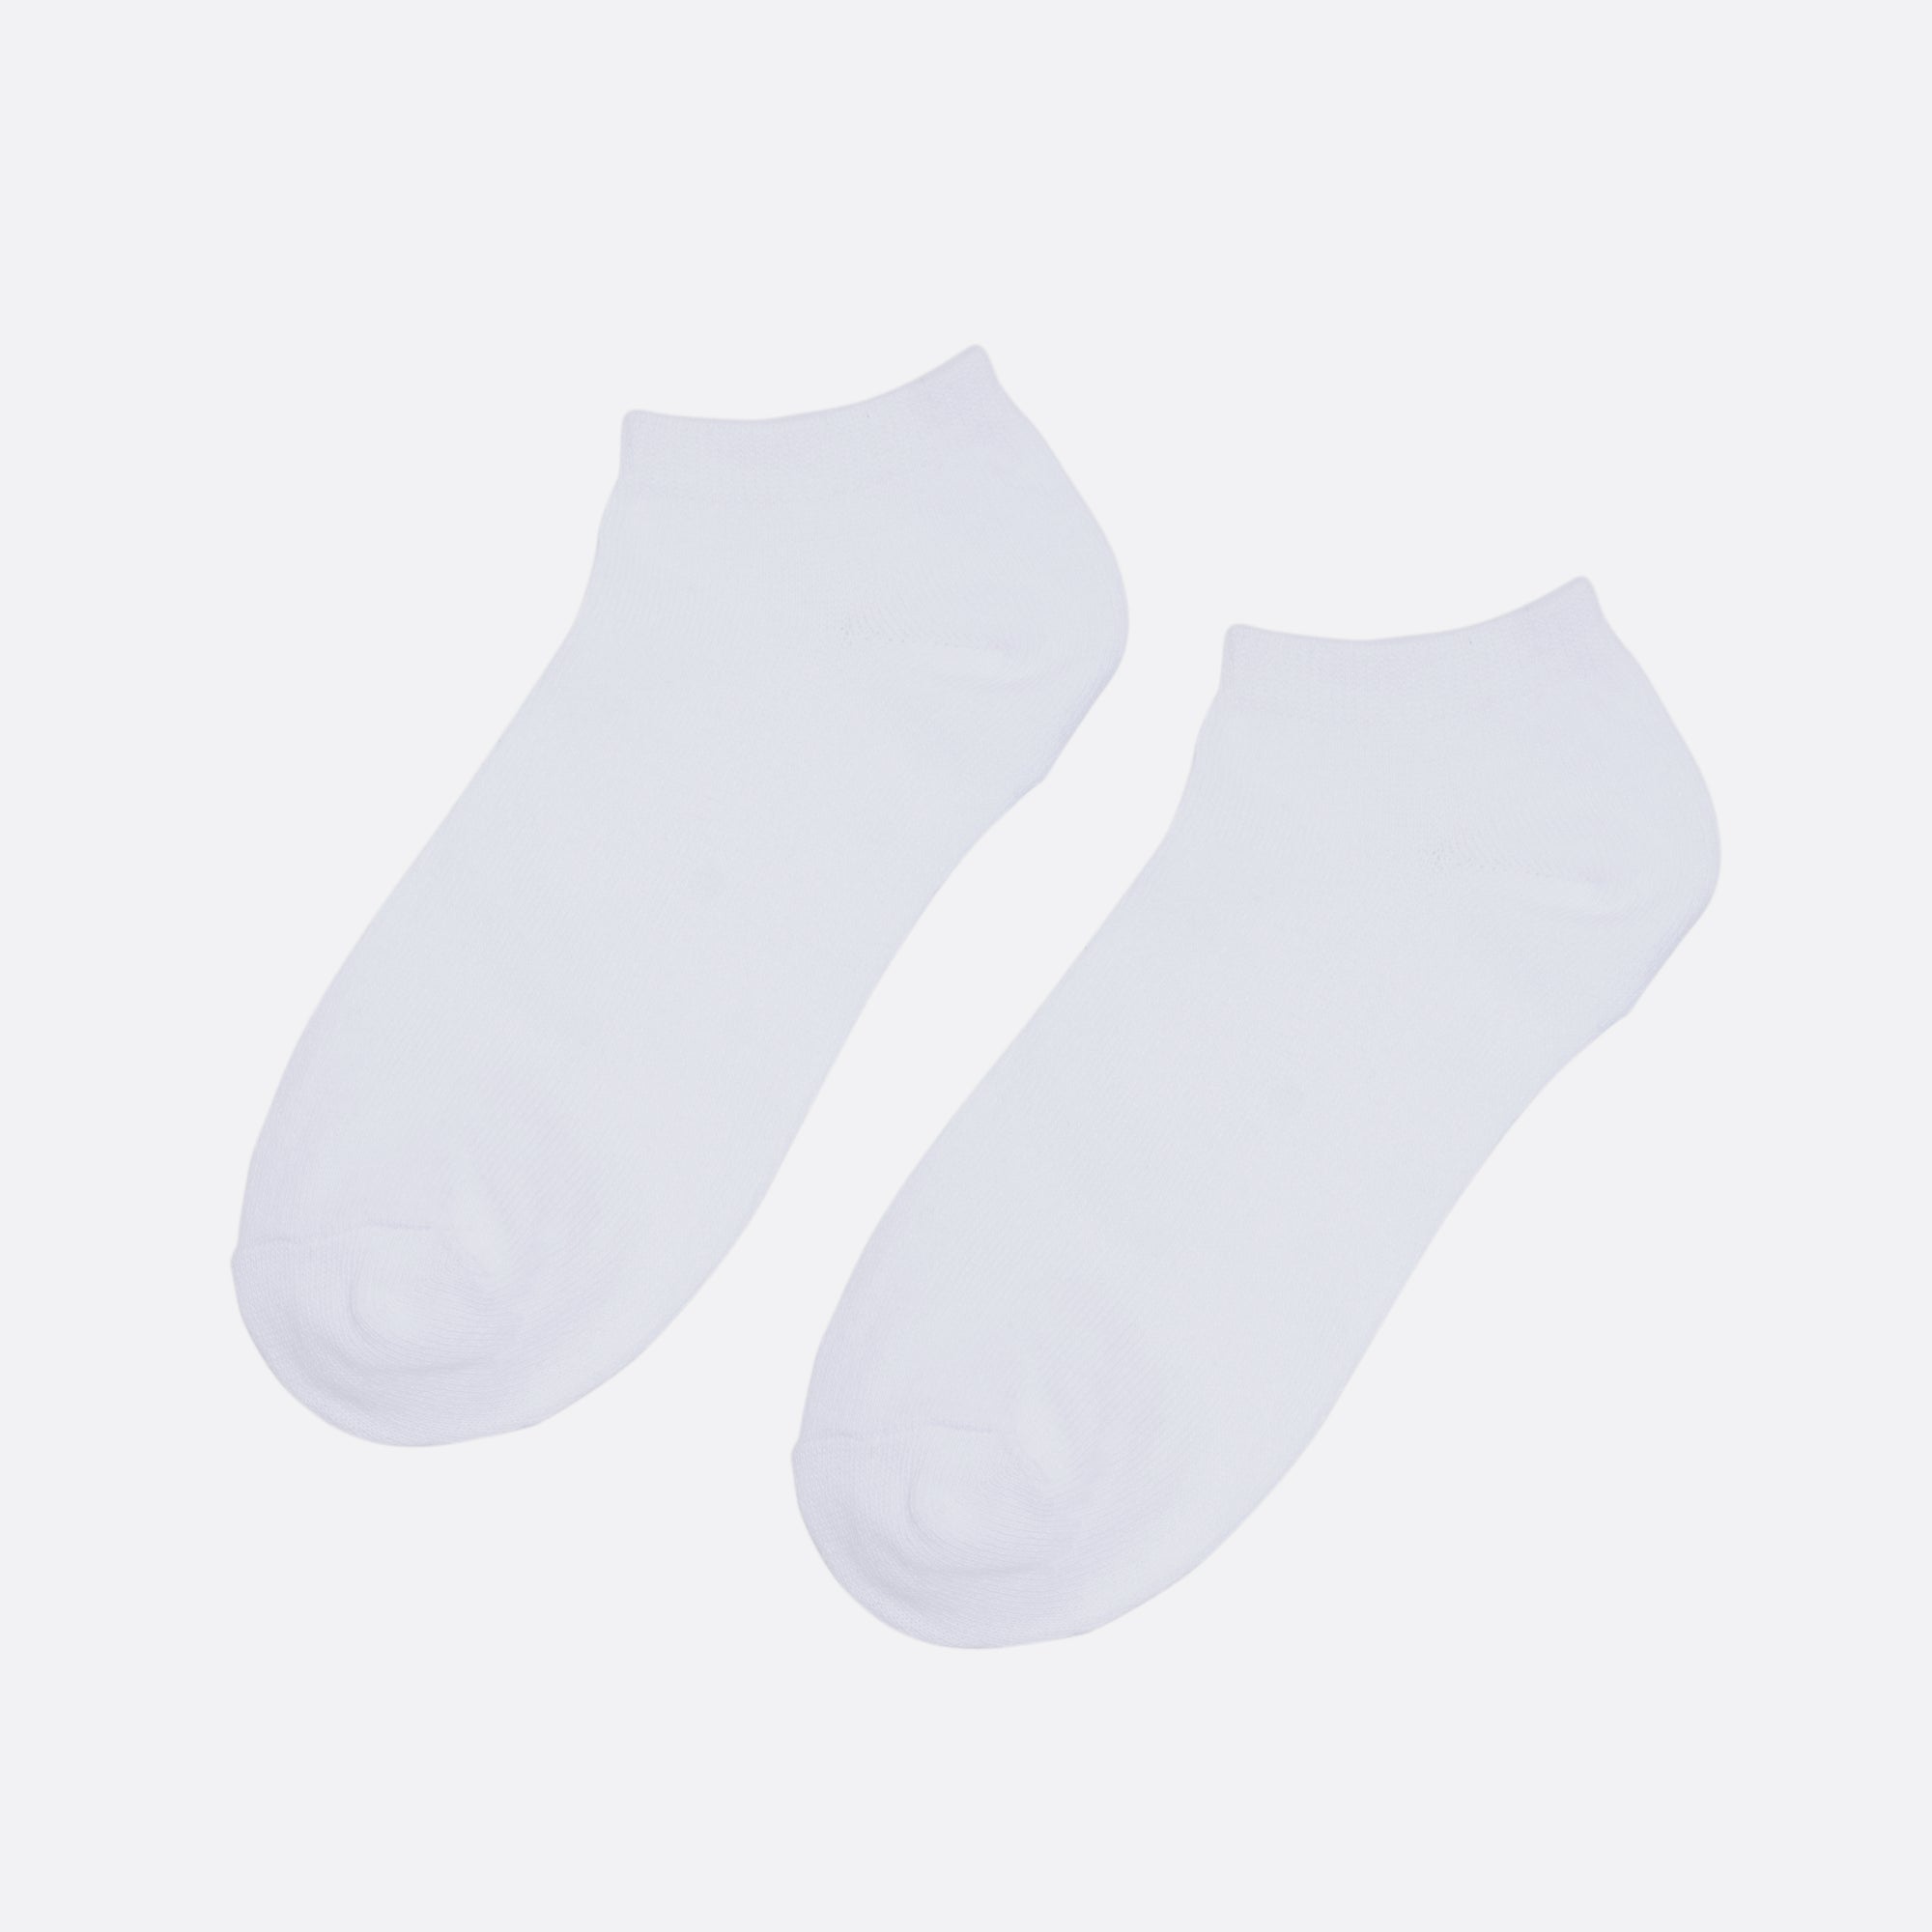 White short ankle socks